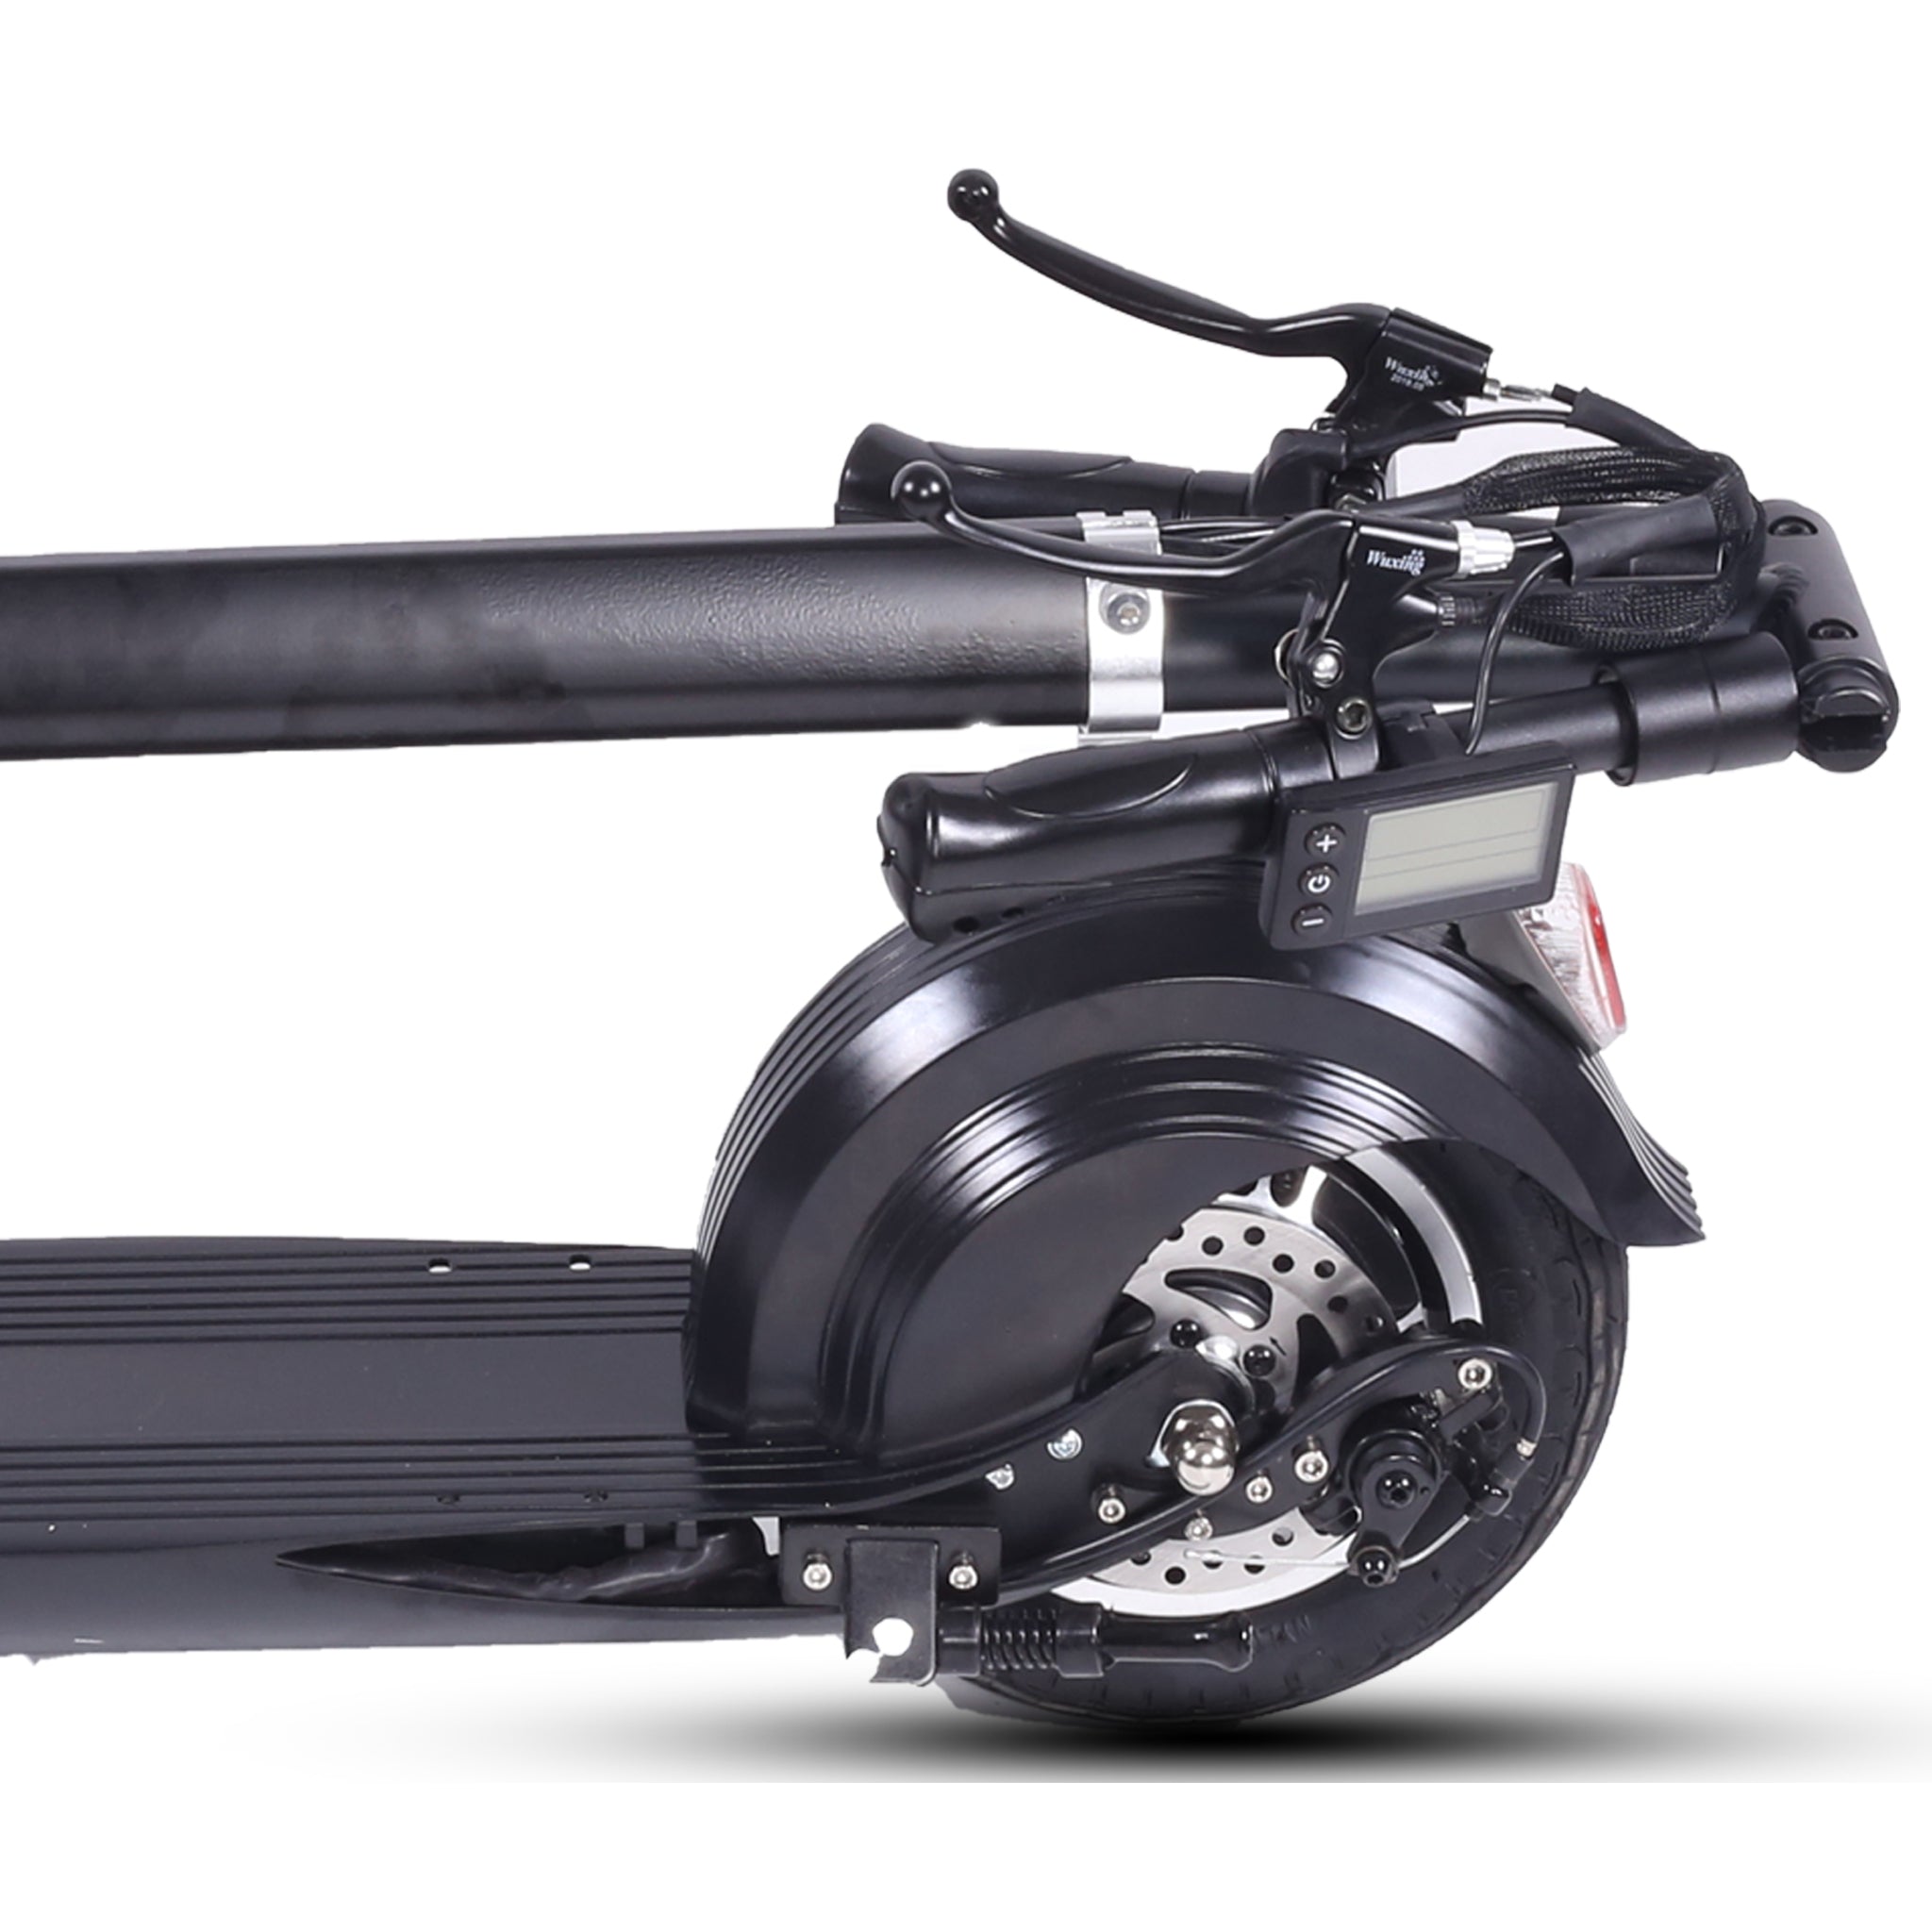 Ninja™ Elelctric Scooter 10AH 40km/h 35km range IP65 waterproof